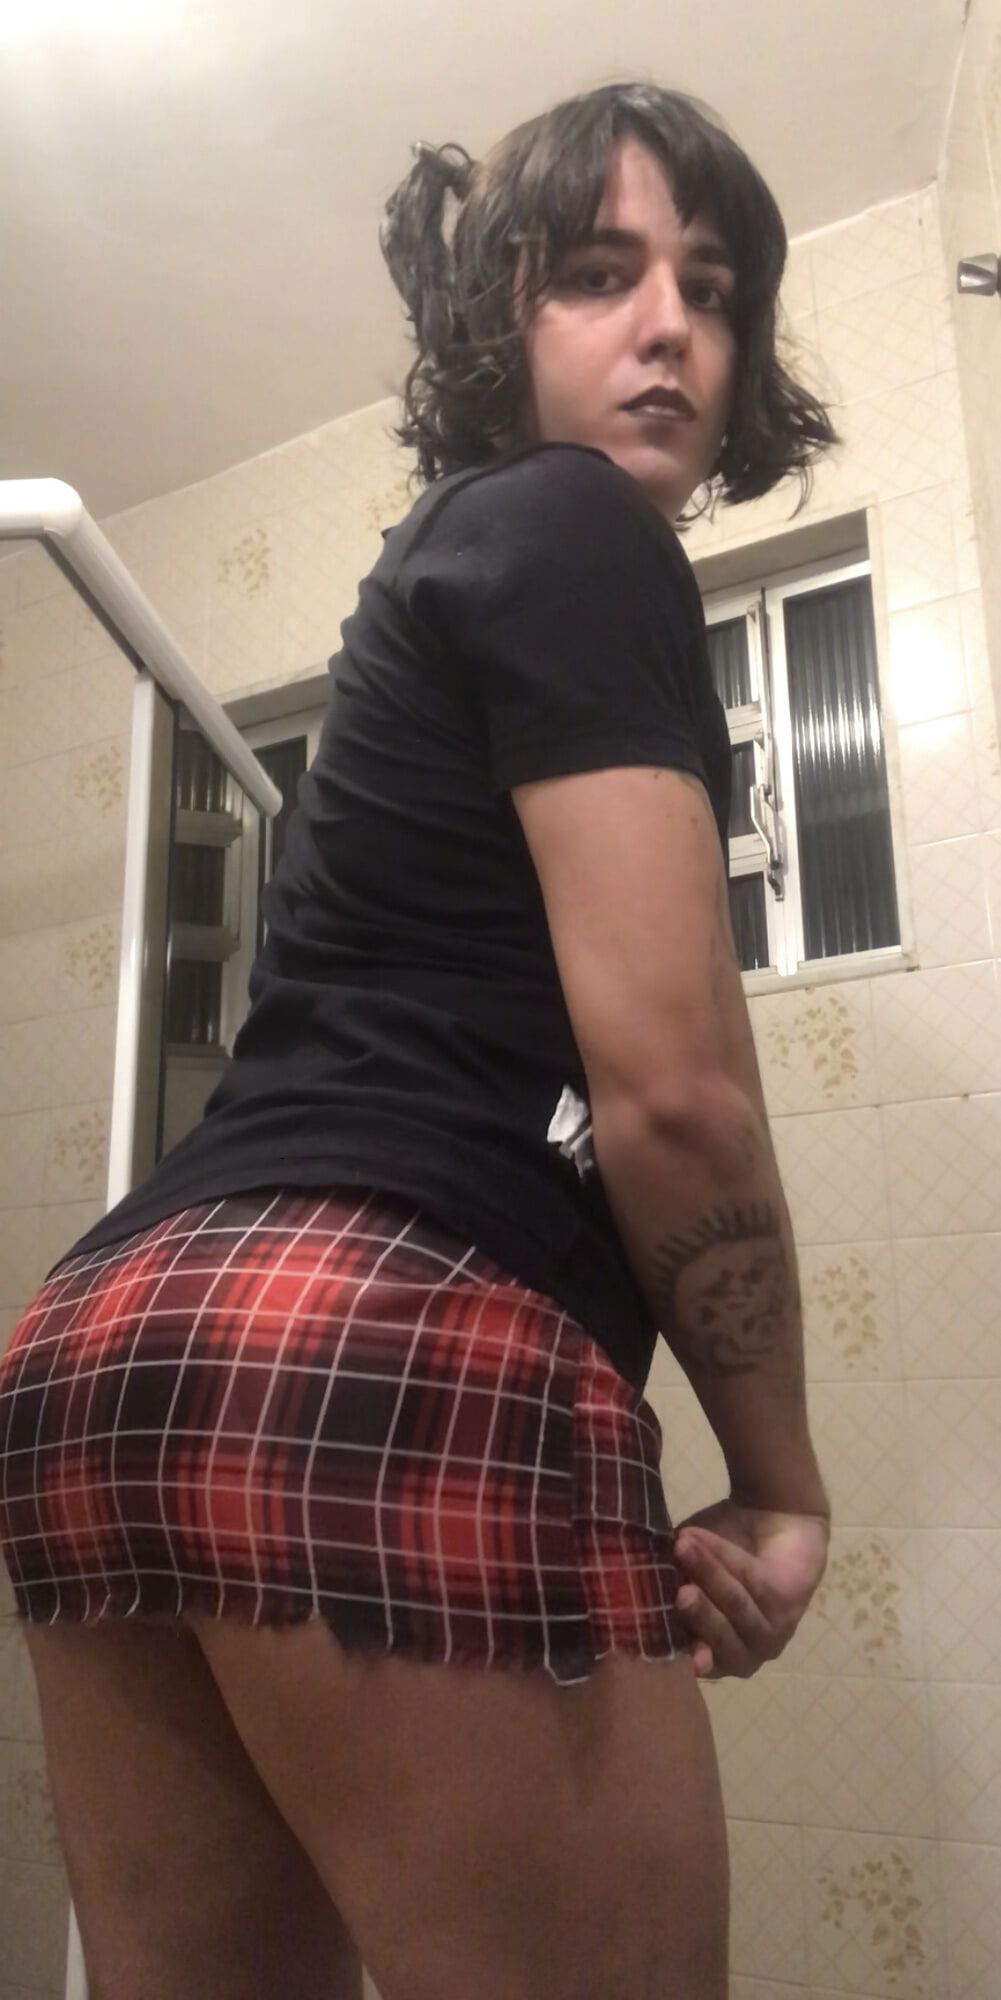 Shemale big ass brazilian punk tgirl latina plaid skirt